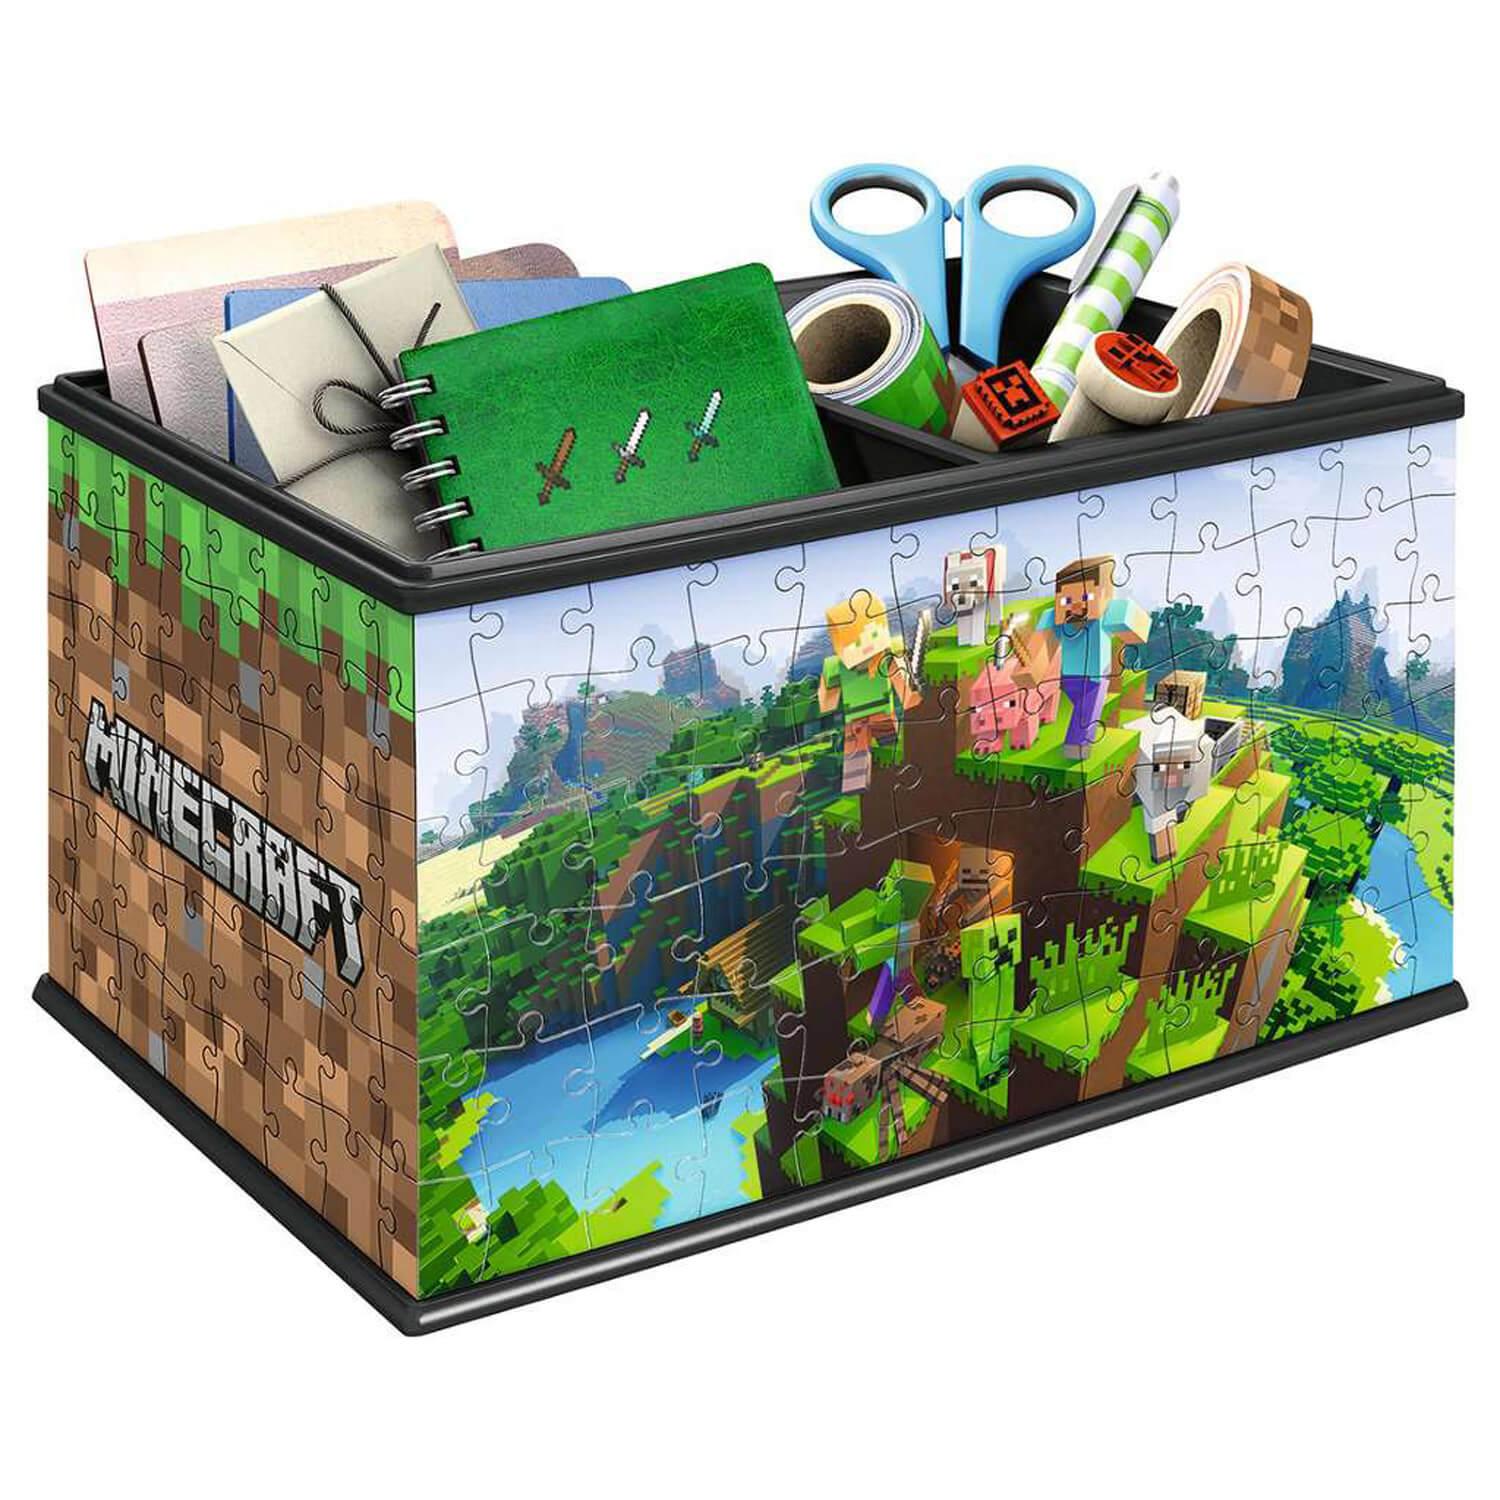 Puzzle Ravensburger Pokémon 3D puzzle Storage box (216 pieces)